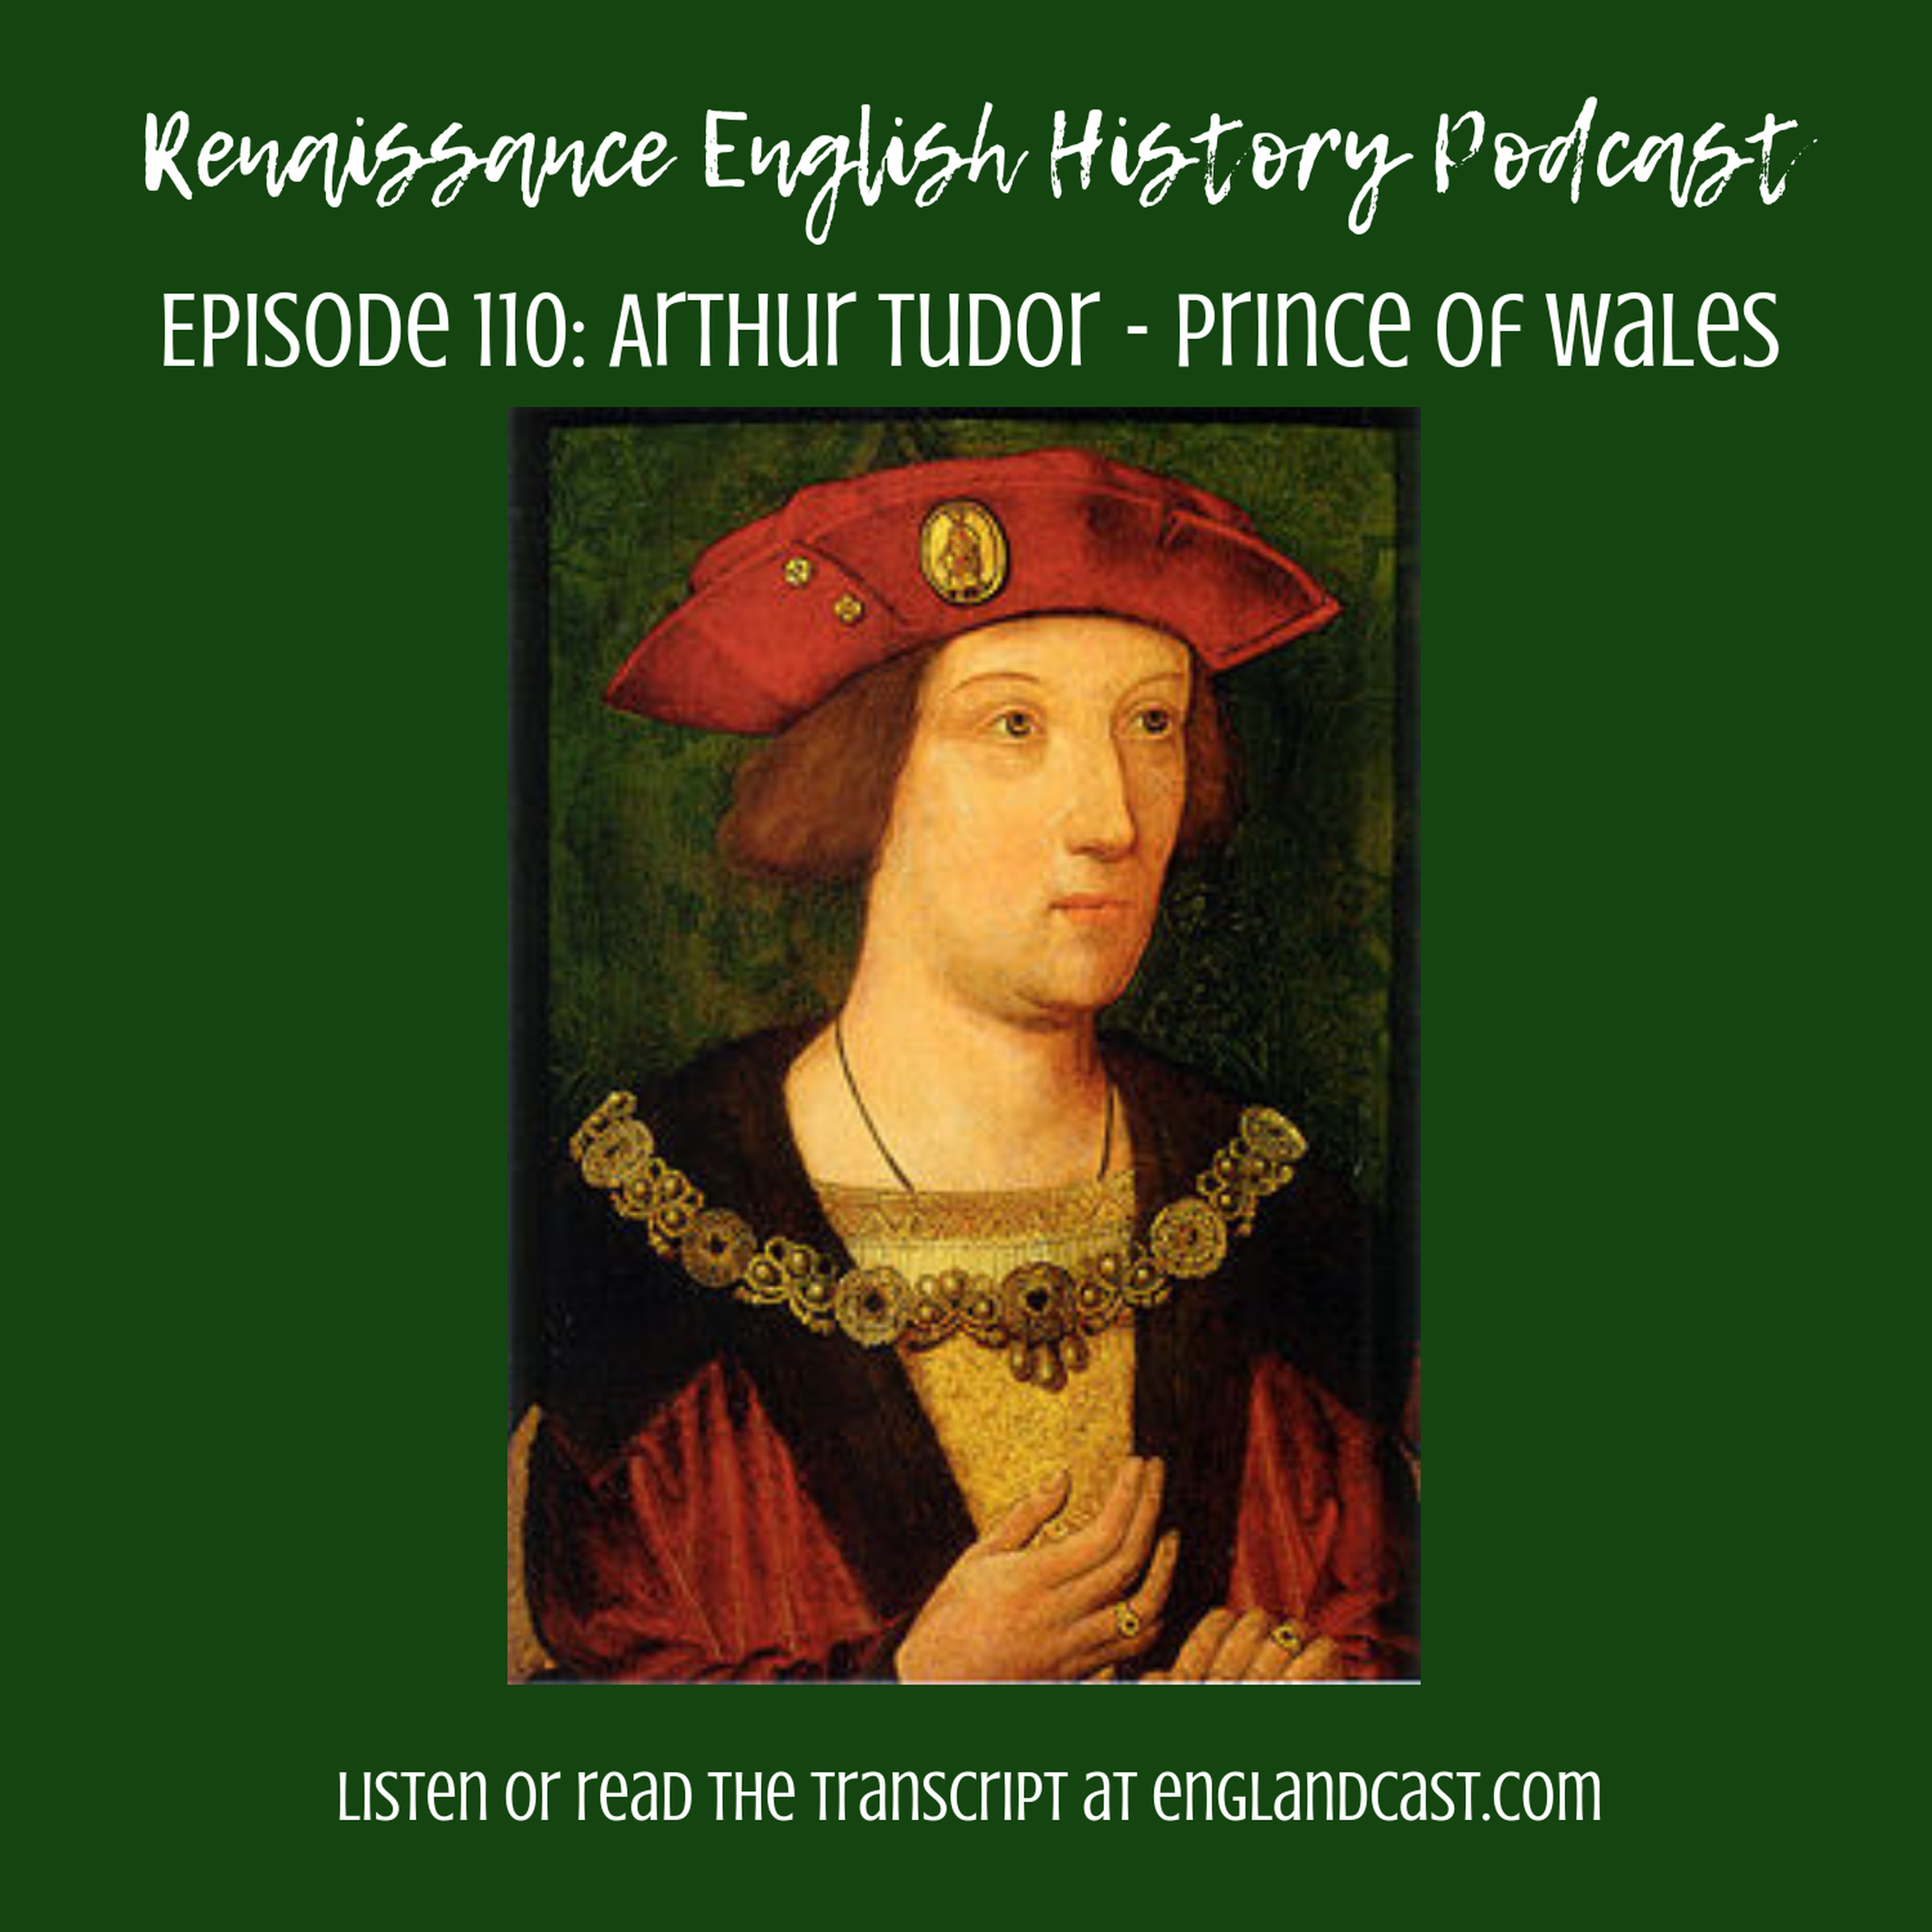 Episode 110: Arthur Tudor